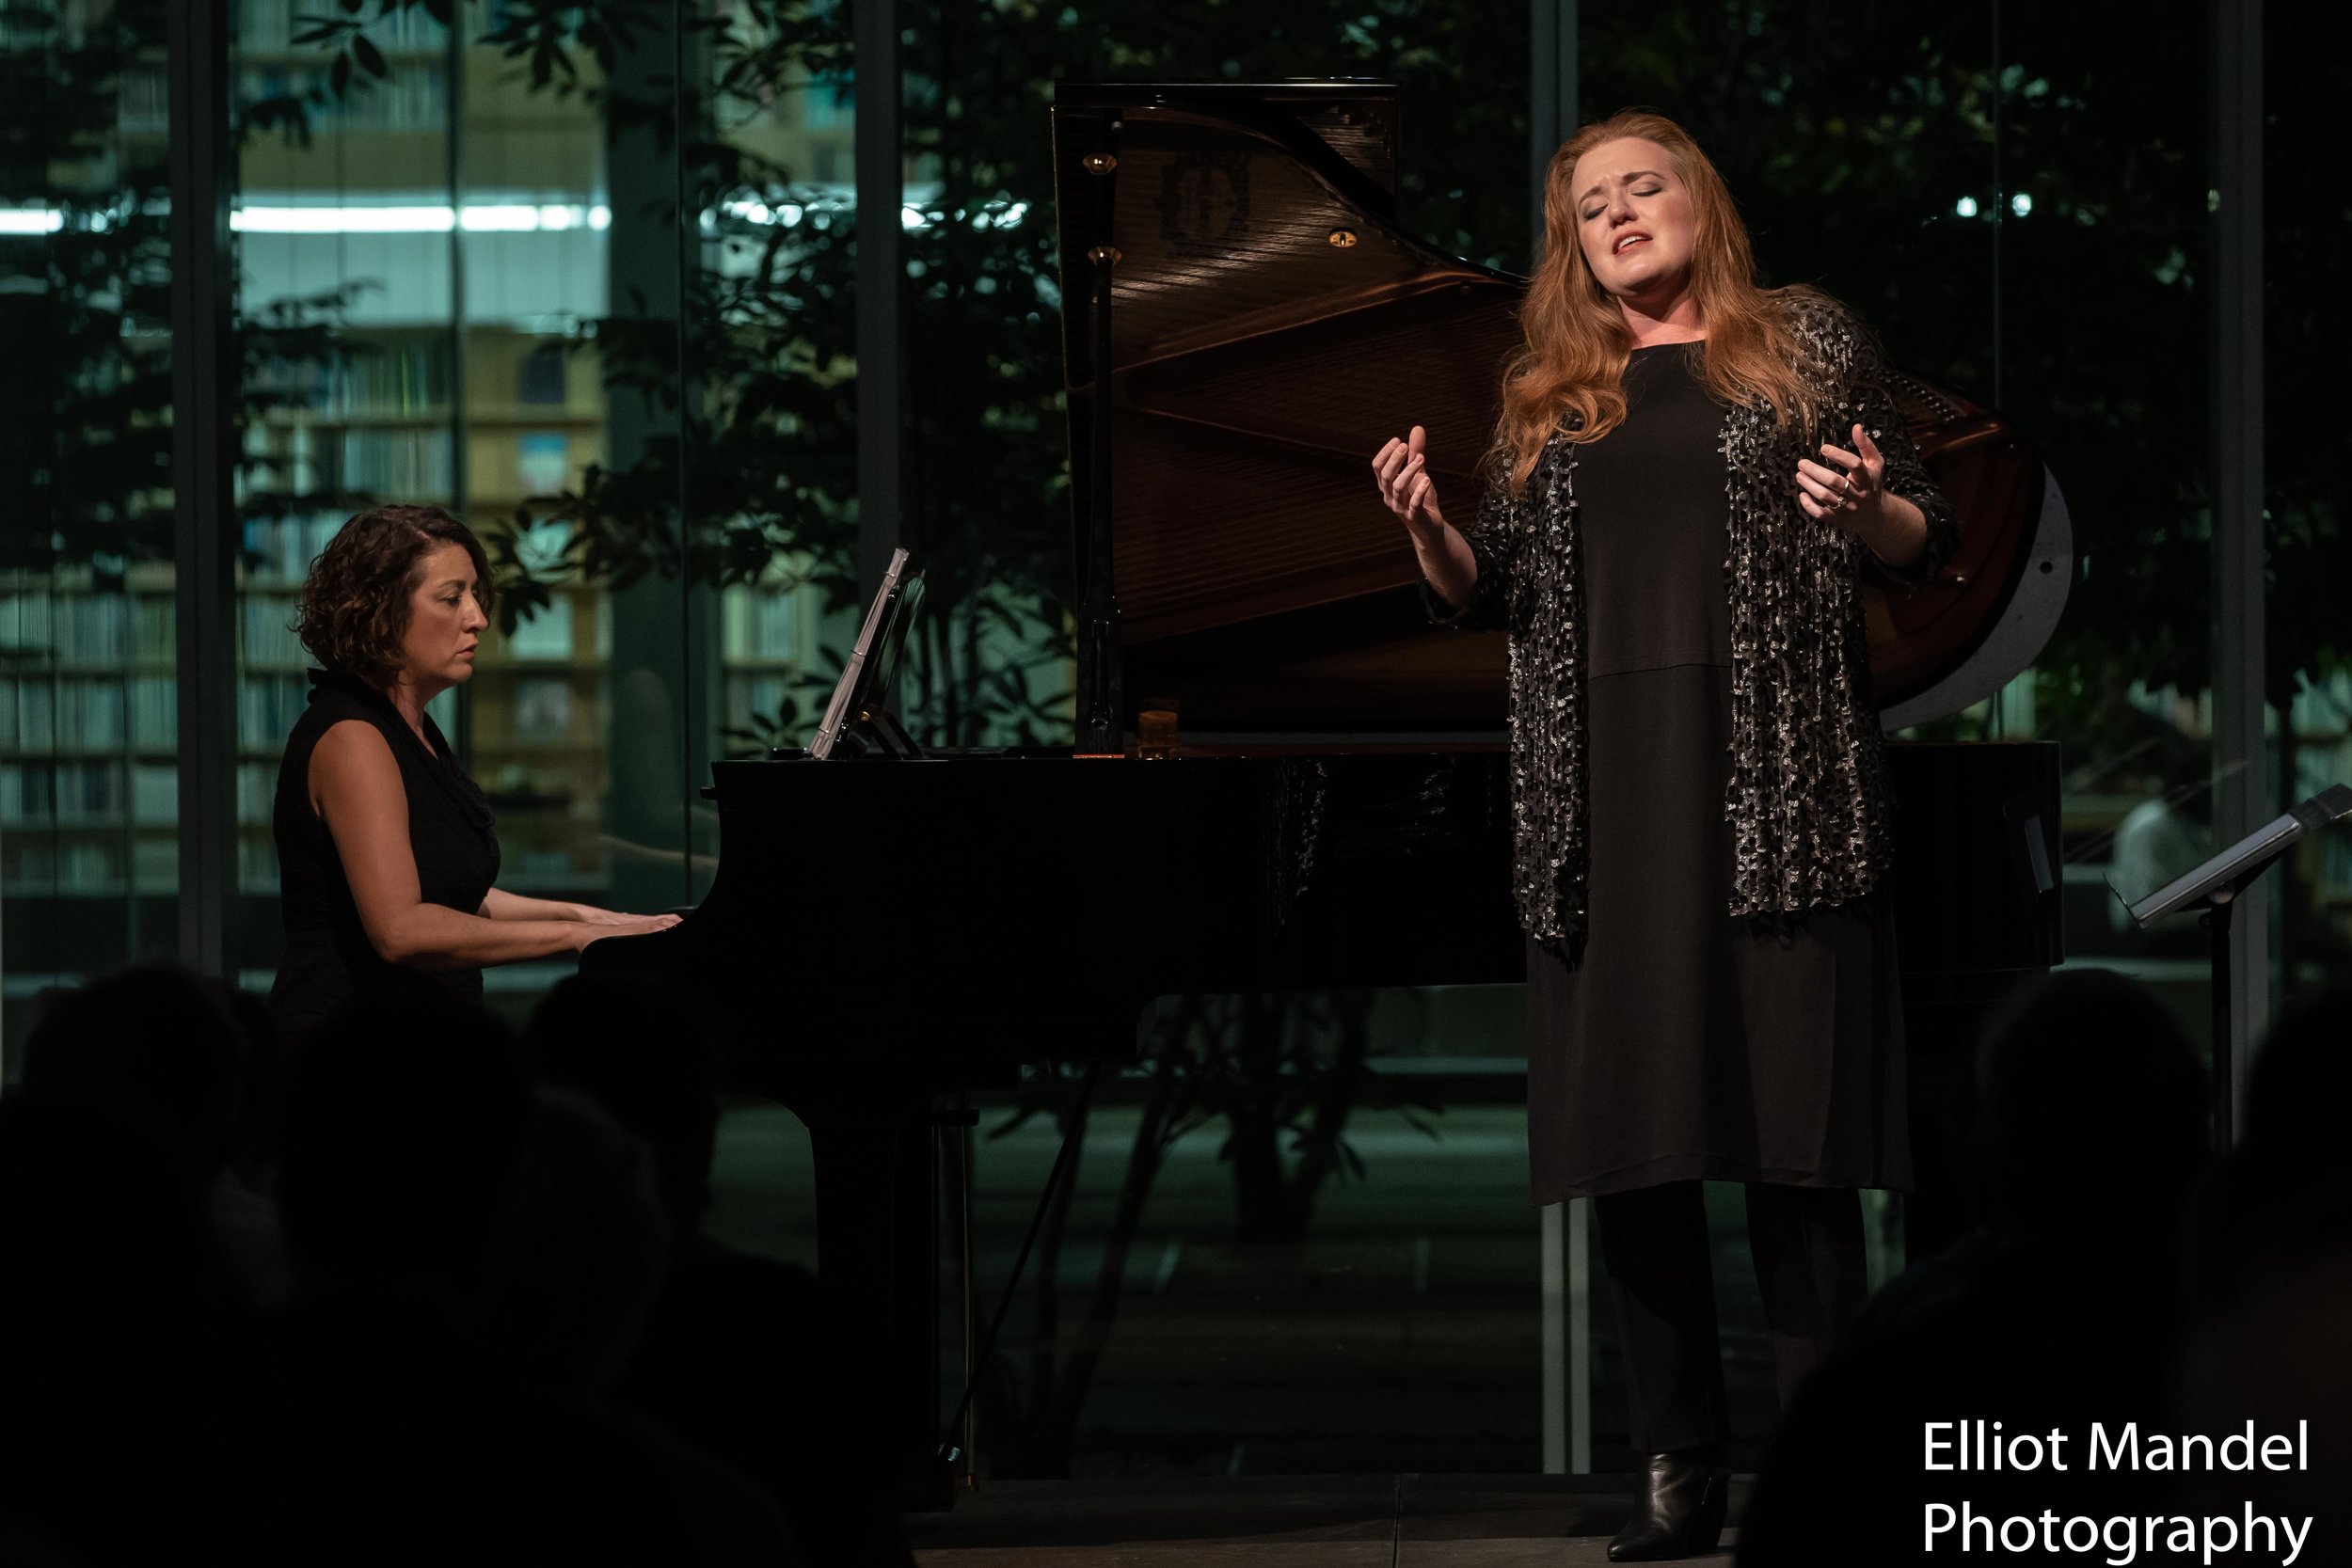  Mezzo-soprano Jennifer Johnson Cano and pianist Shannon McGinnis open the 2018 Collaborative Works Festival (Sept 5, 2018).  